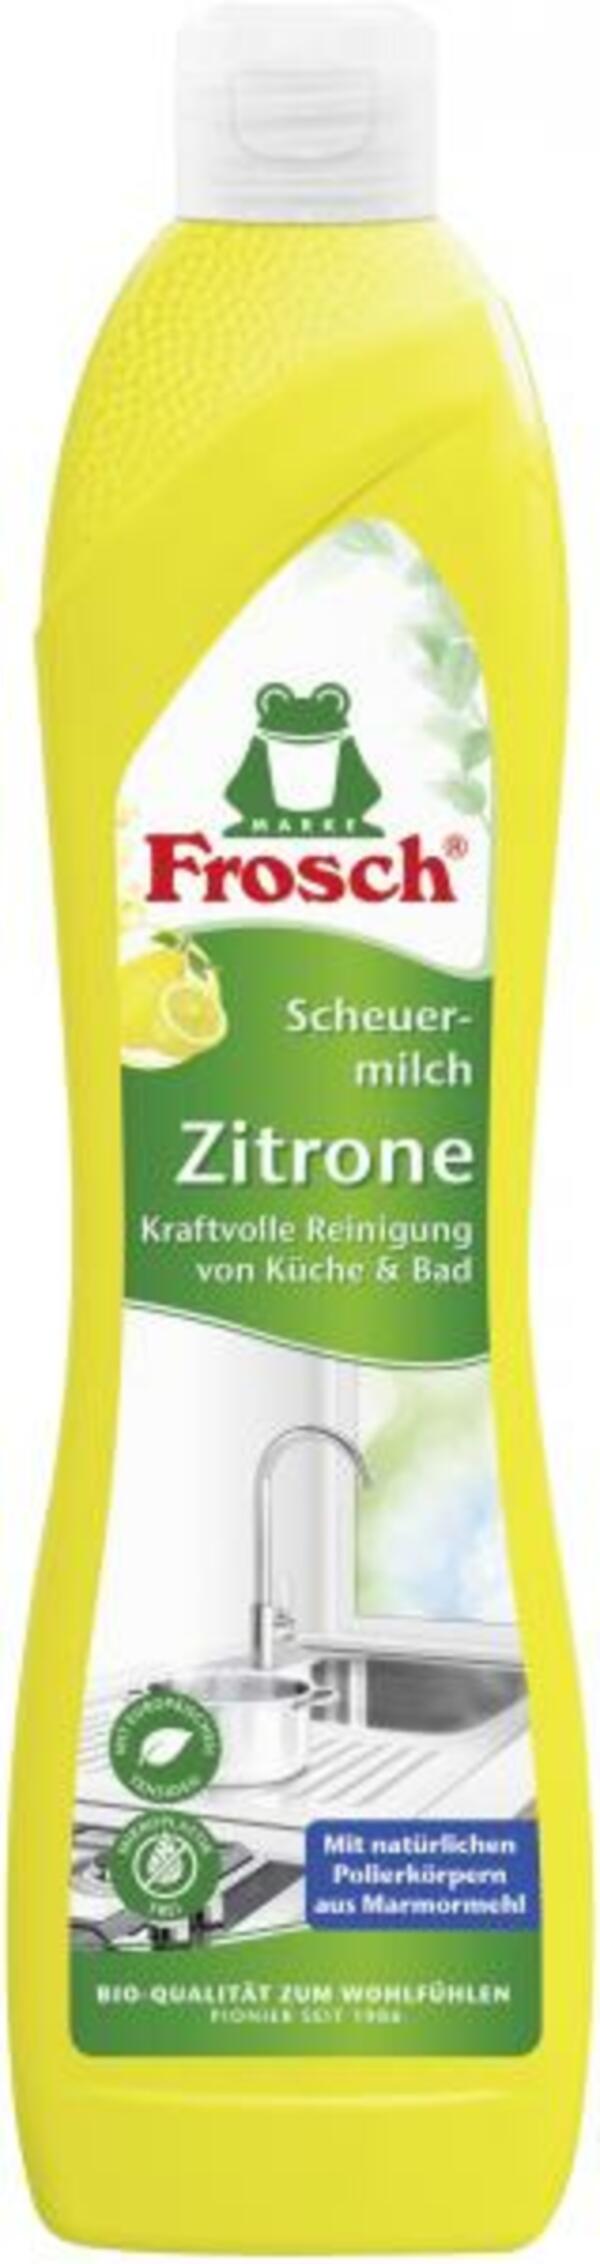 Bild 1 von Frosch Scheuermilch Zitrone